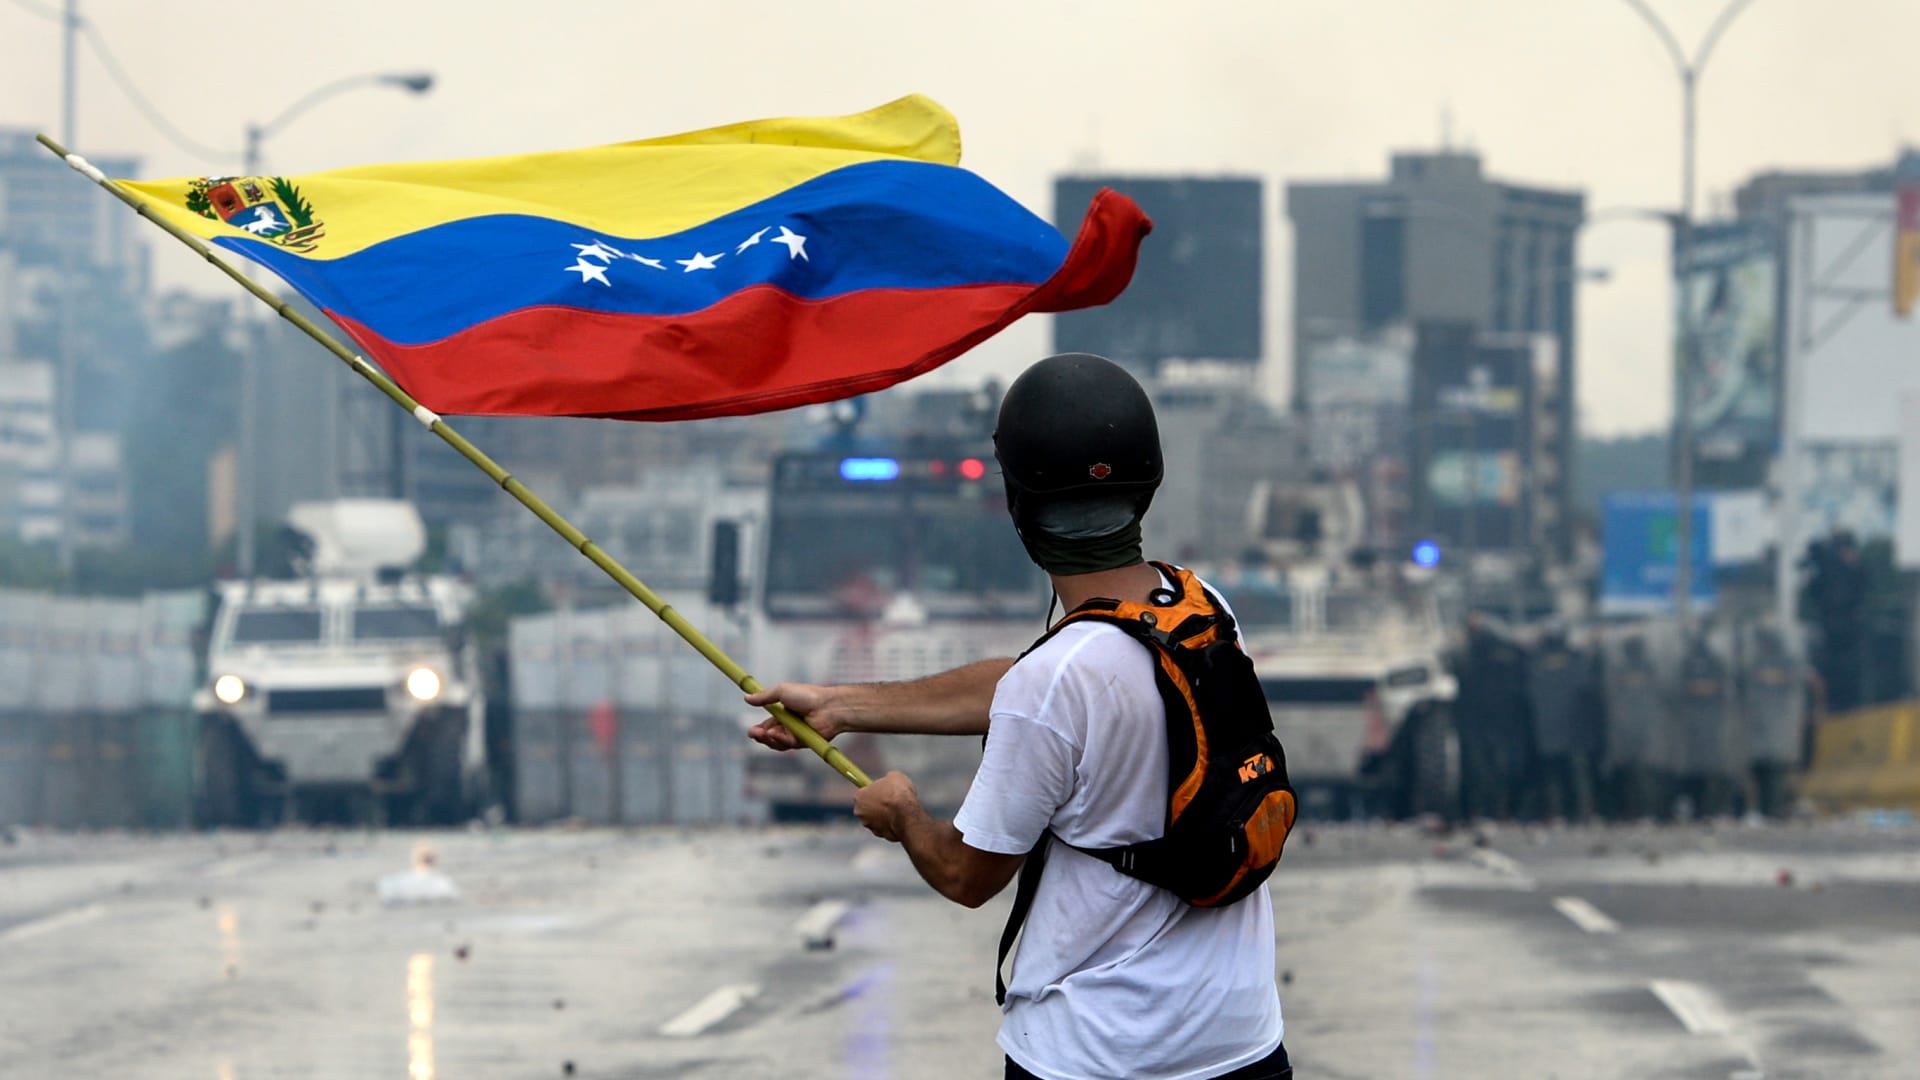 العنف يتصاعد على الحدود الفنزويلية...ومادورو يقطع "العلاقات الدبلوماسية" مع كولومبيا